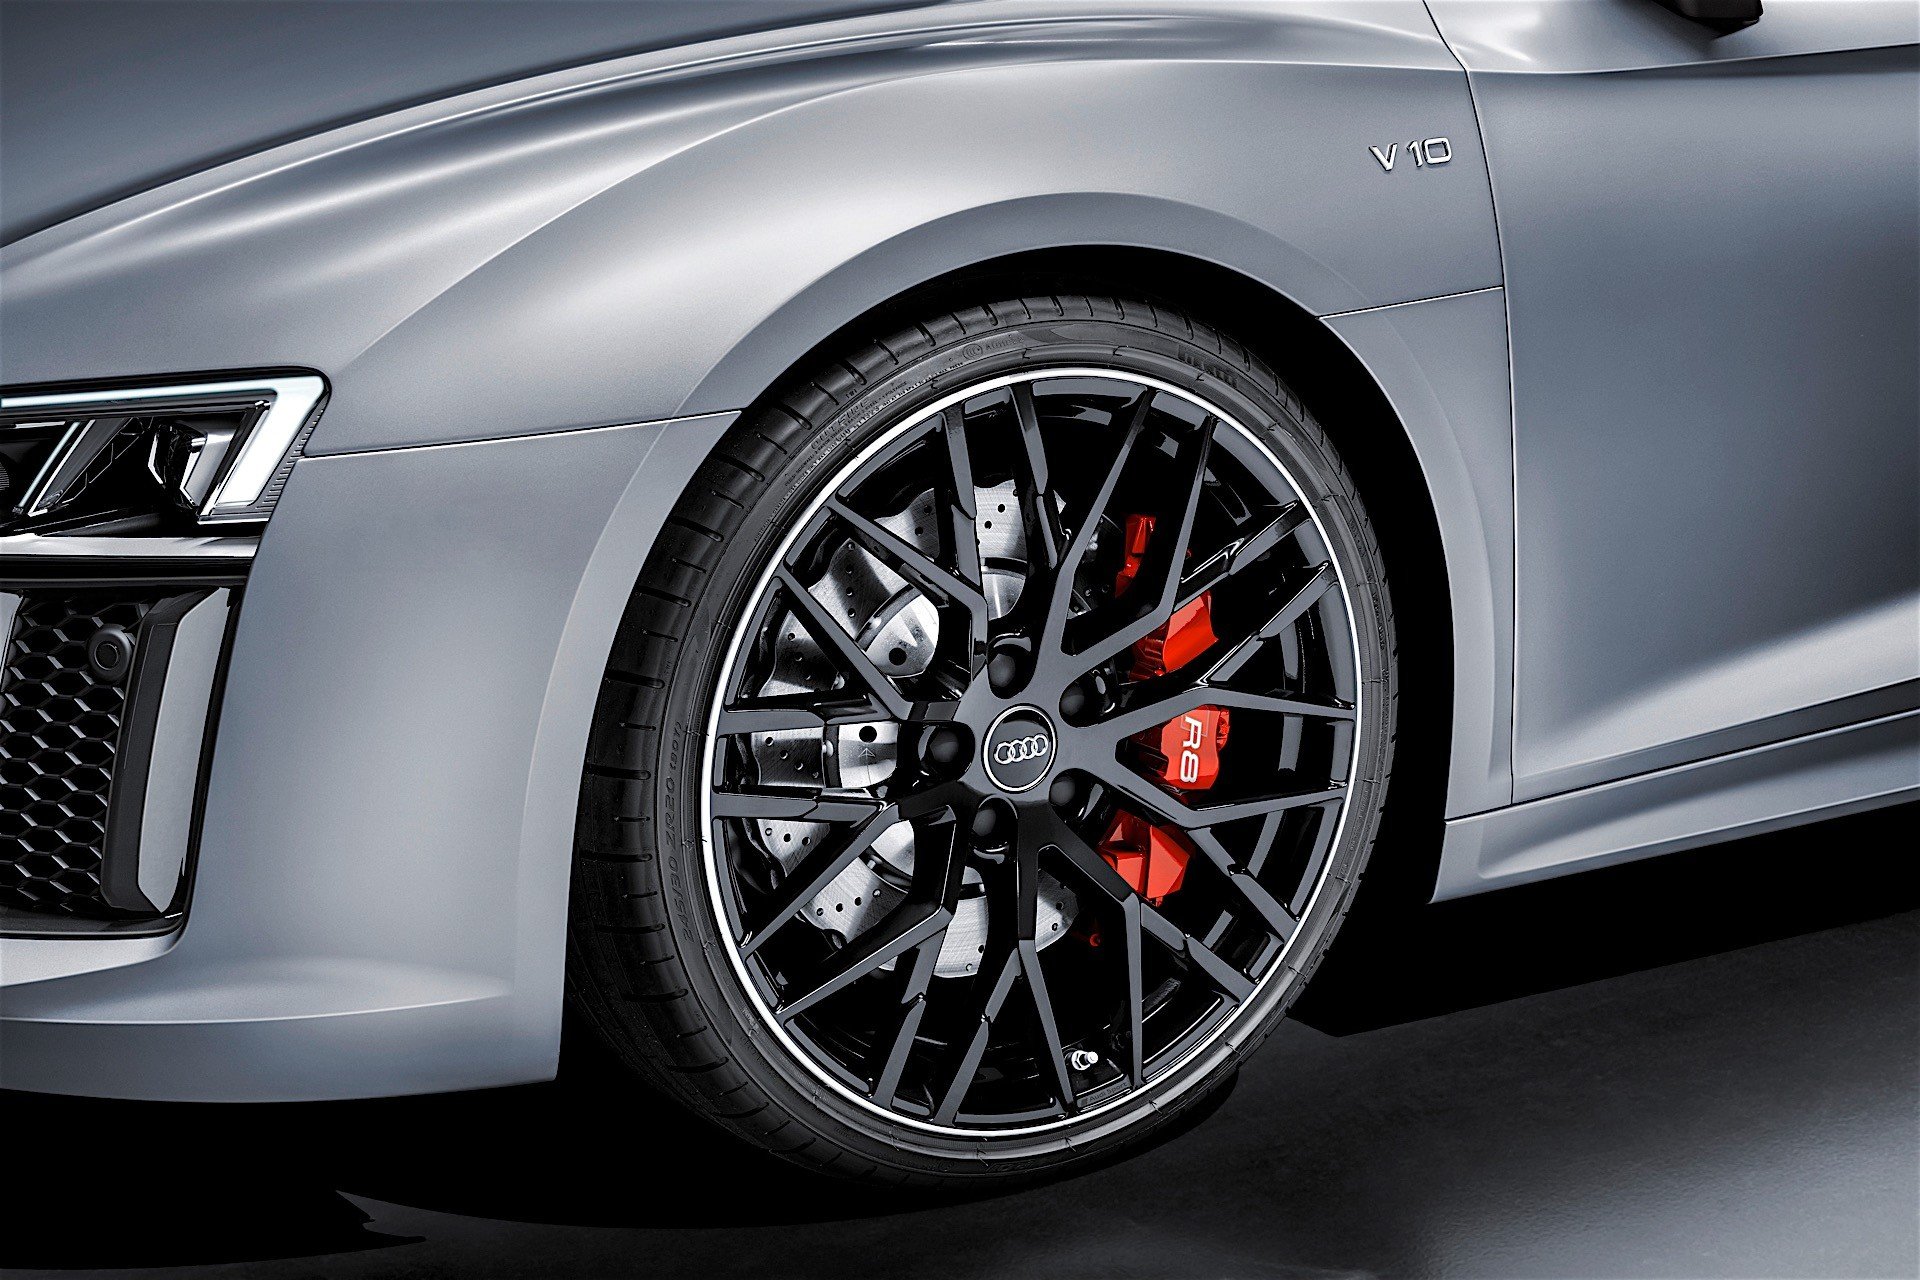 Audi R8 V10 přijíždí v edici Audi Sport Edition